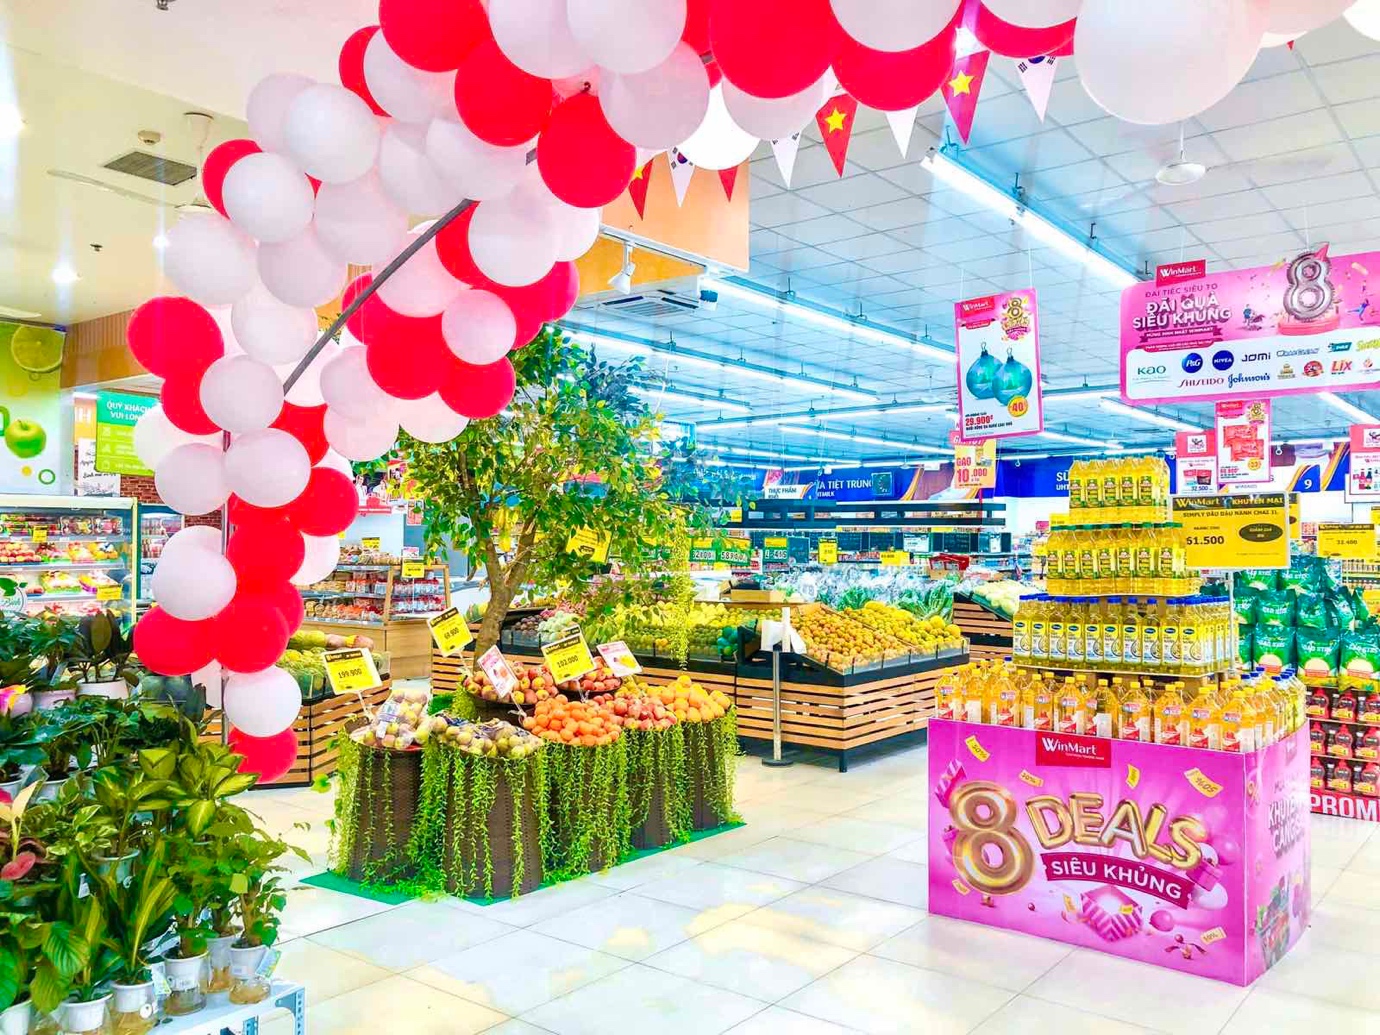 Kích cầu mua sắm dịp cuối năm, WinMart/WinMart+ “tung” khuyến mại lớn nhân dịp sinh nhật 8 tuổi - Ảnh 4.